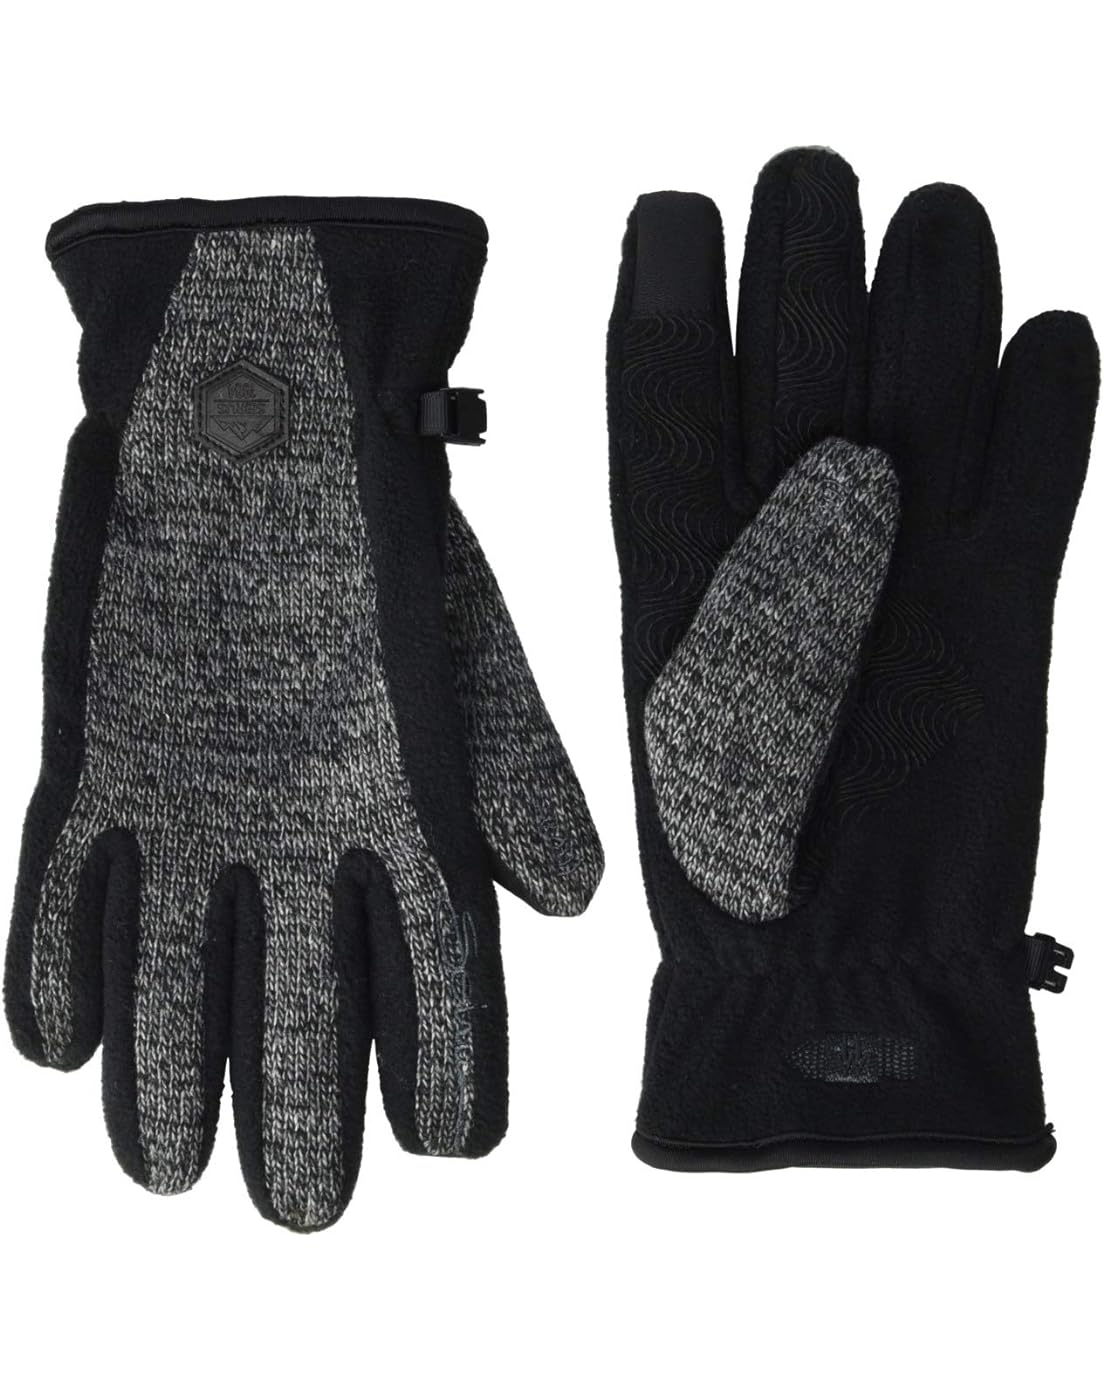 Seirus Ravine Fleece Heatwave Gloves